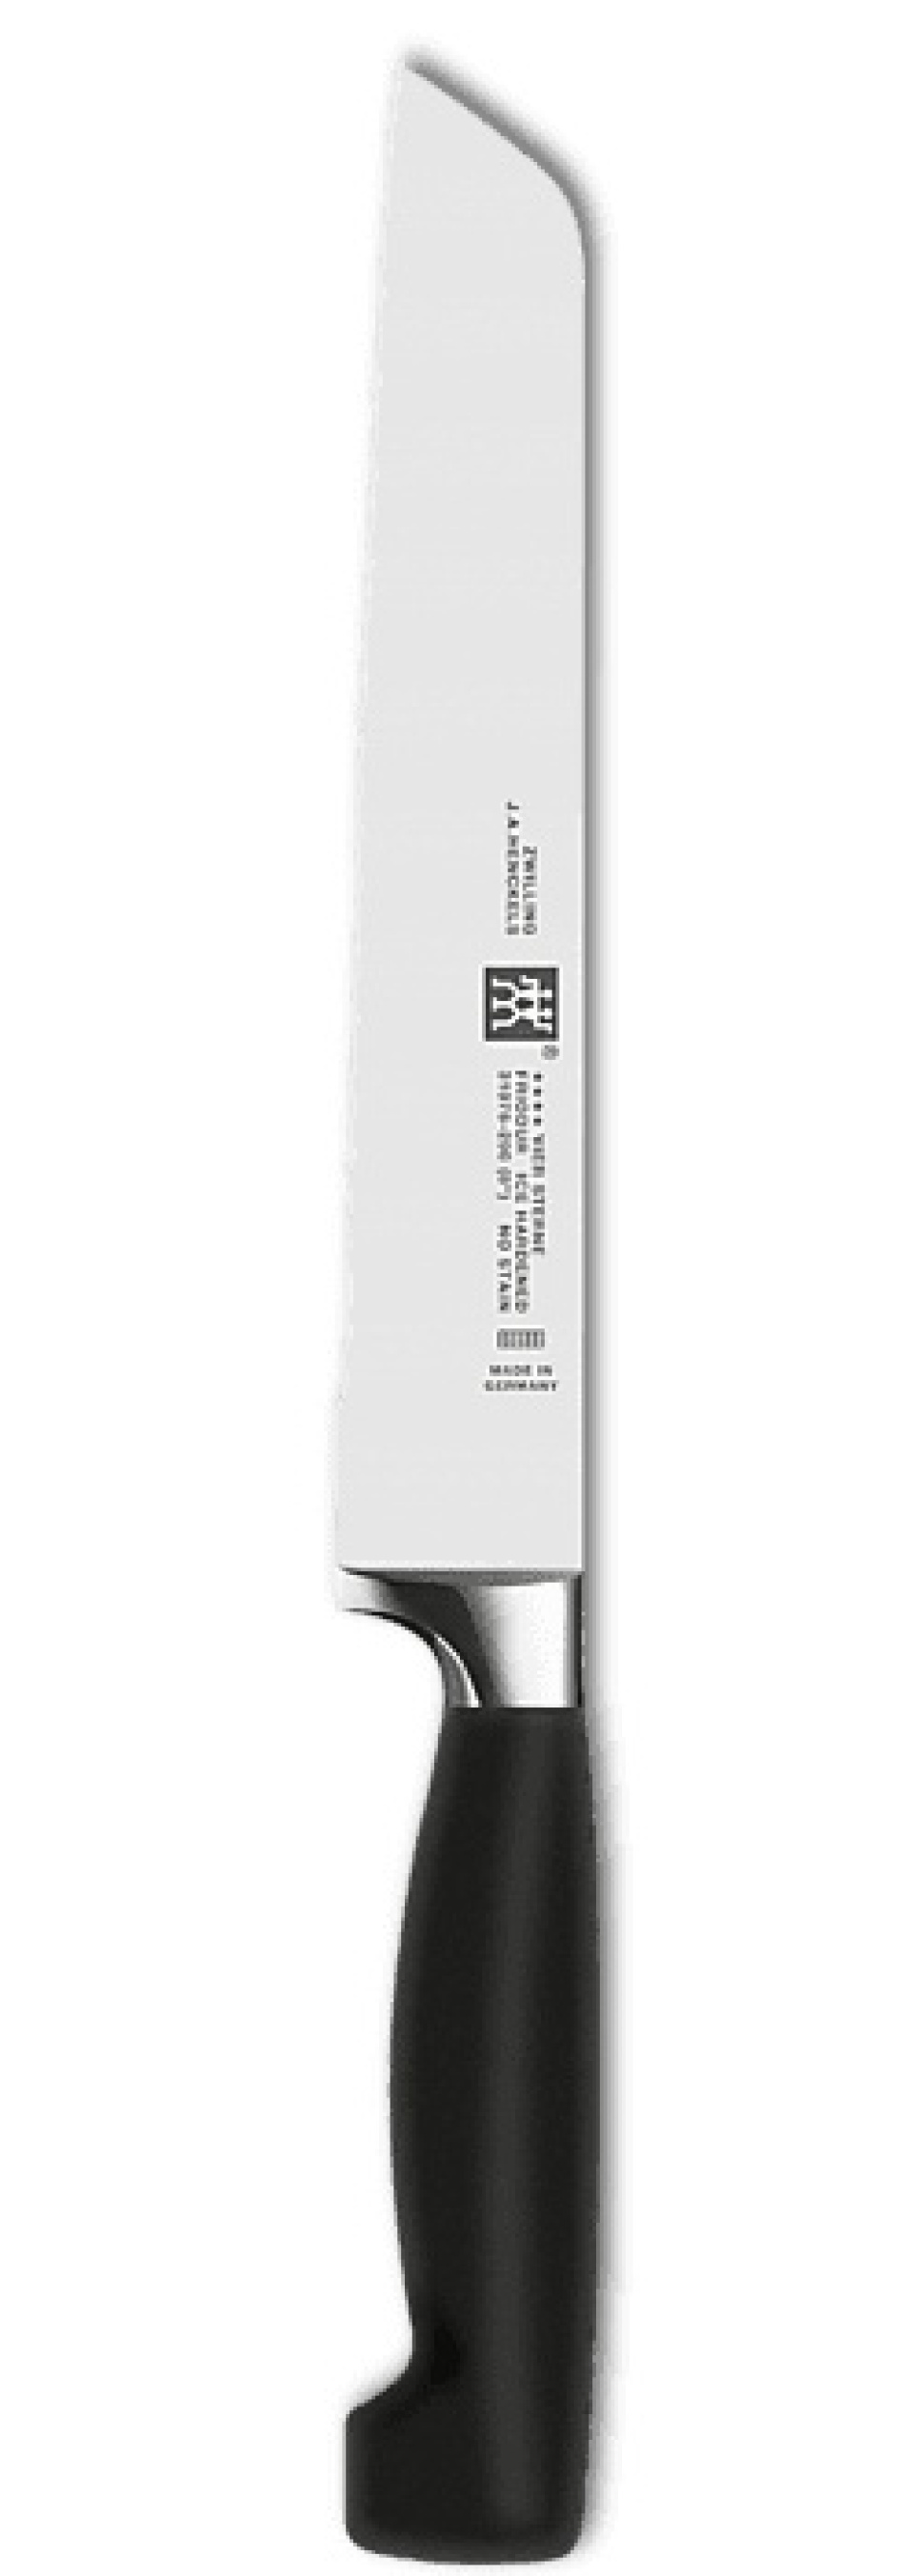 Nóż do chleba Four Star, 20 cm w grupie Gotowanie / Noże kuchenne / Noże do chleba w The Kitchen Lab (1418-12869)